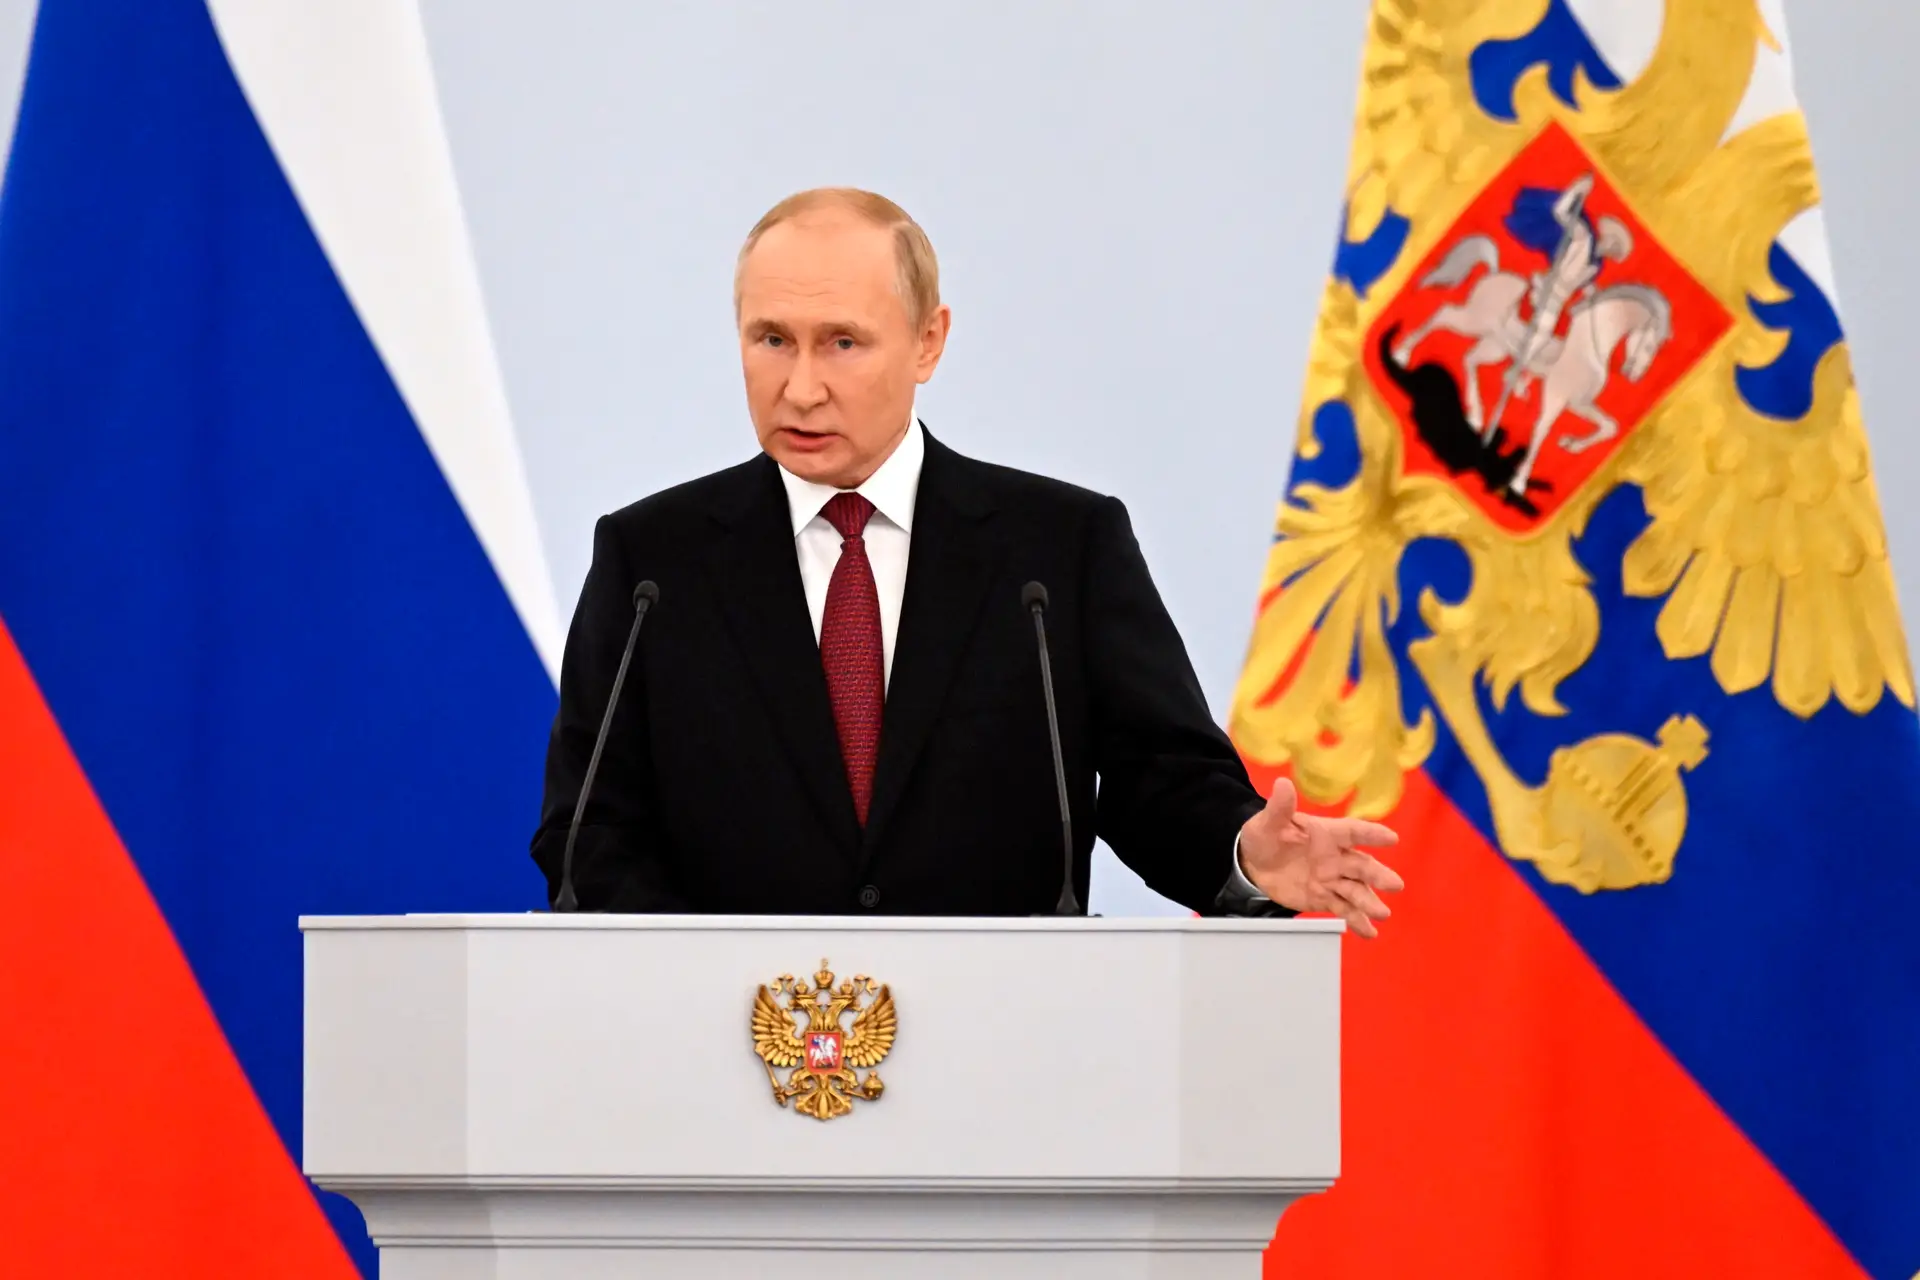 "As pessoas fizeram uma escolha clara", diz Putin sobre anexação de quatro regiões